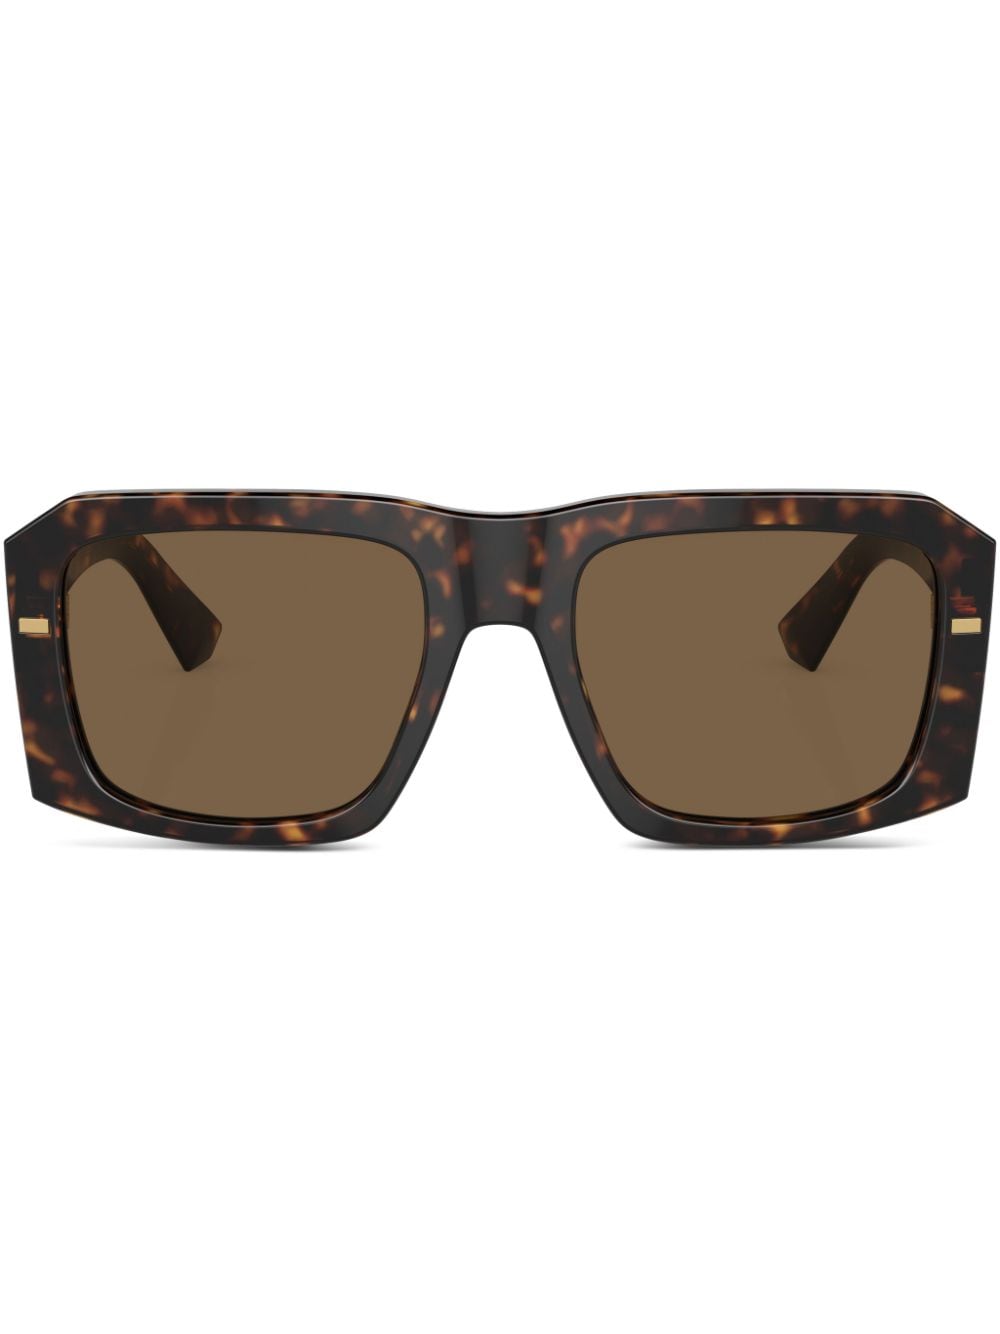 Dolce & Gabbana Tortoiseshell-effect Tinted Sunglasses In Braun